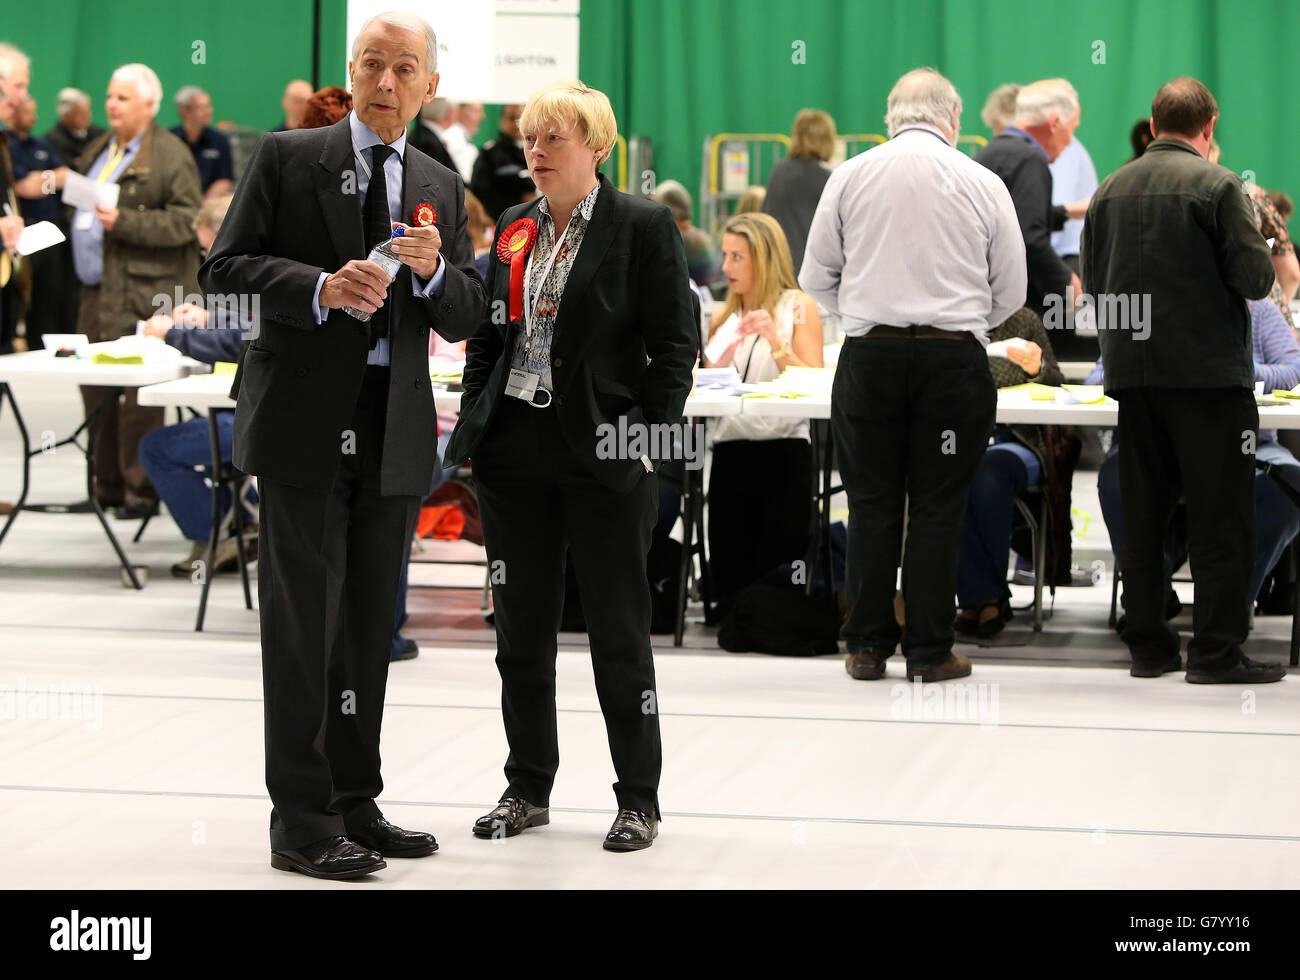 Le candidat du travail pour Birkenfield Frank Field et le candidat du travail pour Wirral South Angela Eagle regardent les personnes comptant les votes au Wirral tennis Centre, Bidston, Wirral pendant le décompte des élections générales. Banque D'Images